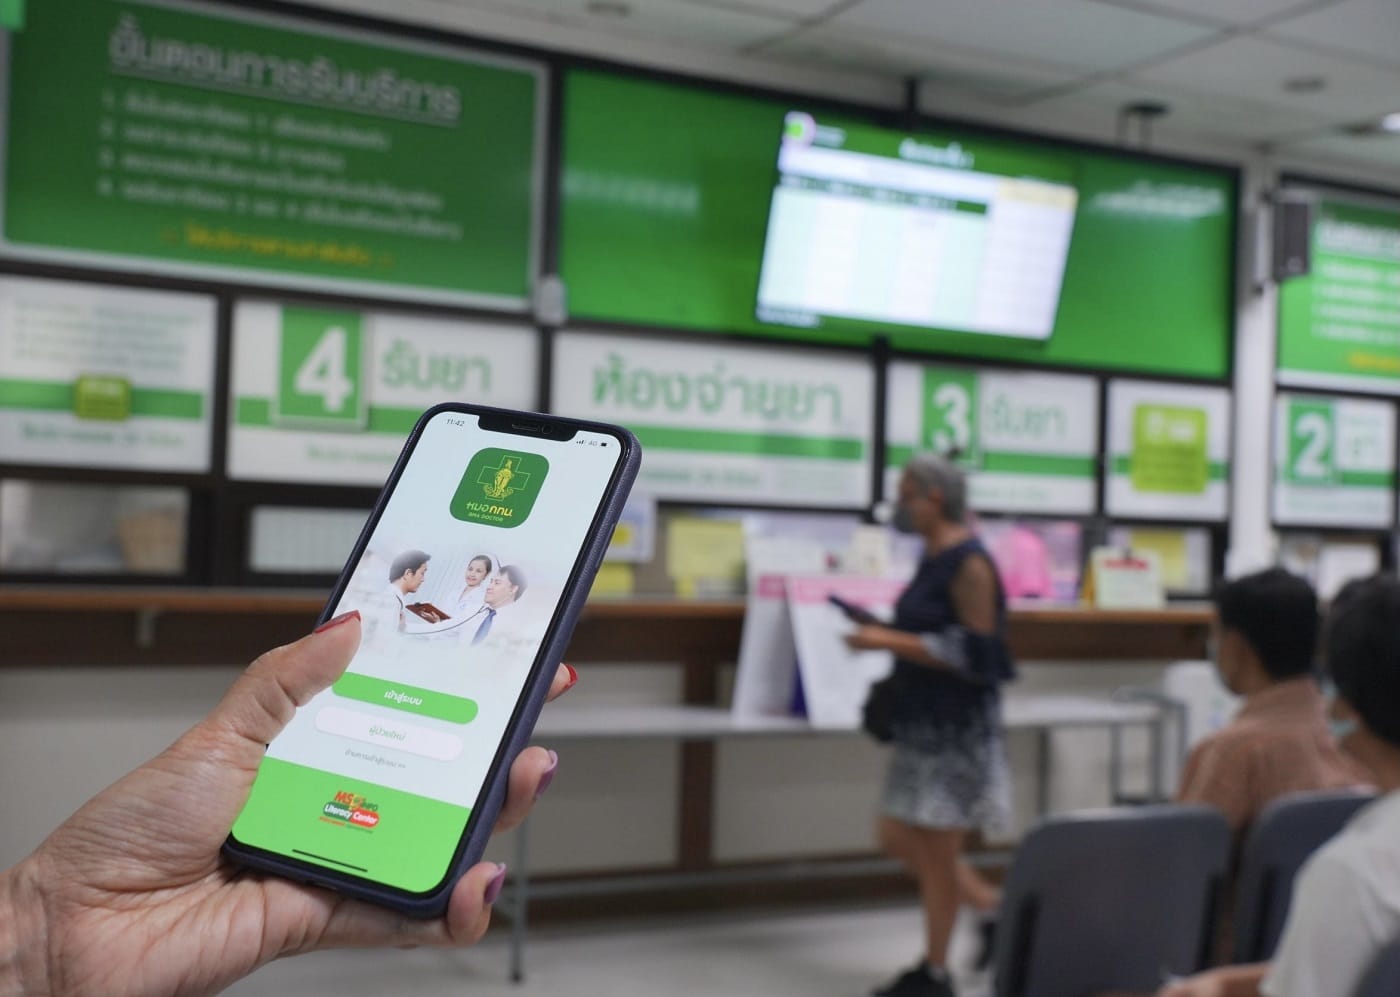 bkk doctor app smart opd kbank